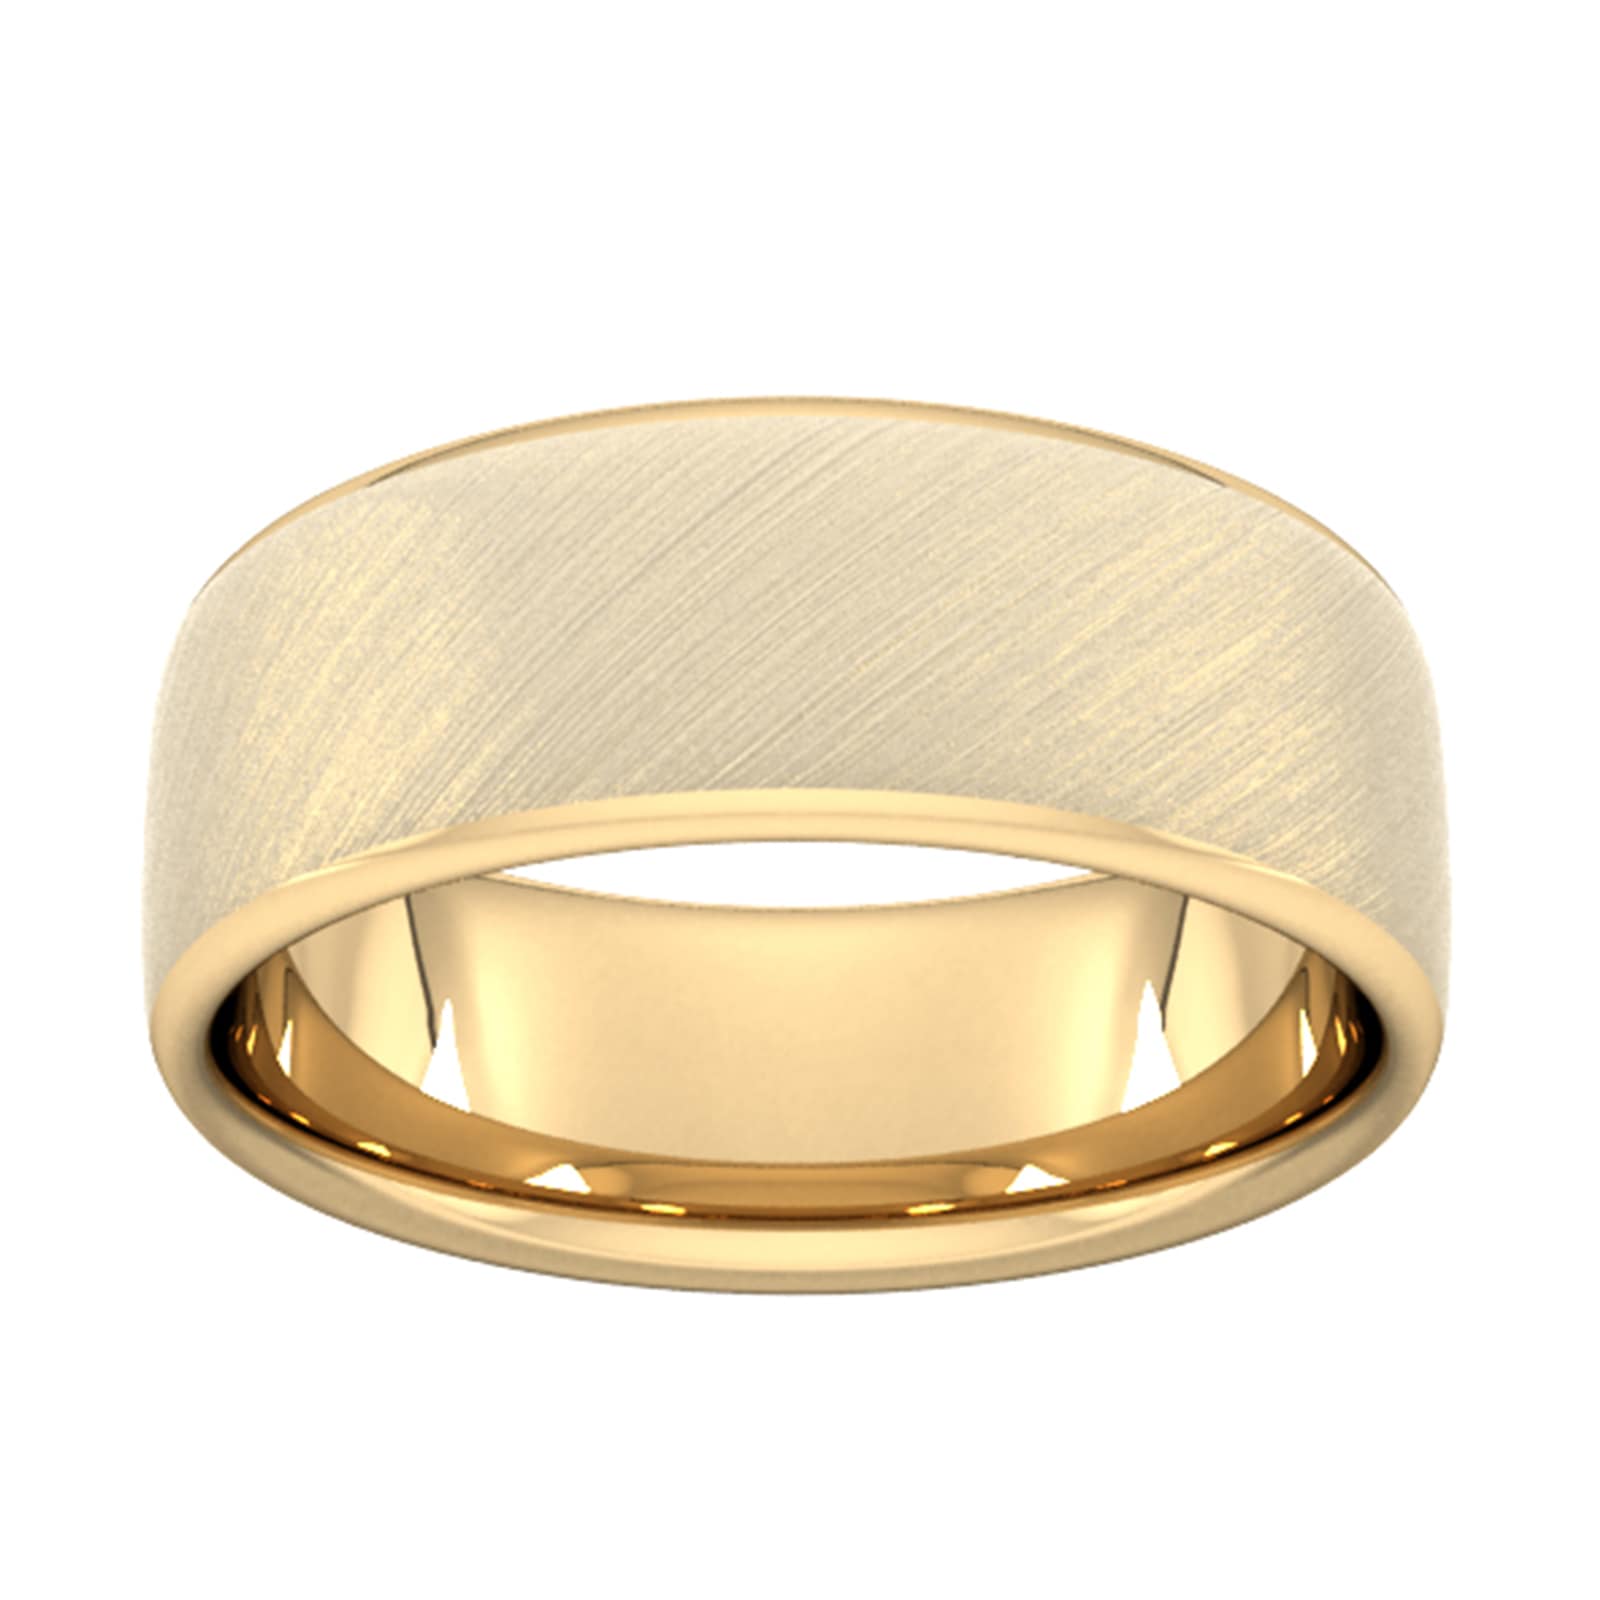 8mm D Shape Heavy Diagonal Matt Finish Wedding Ring In 18 Carat Yellow Gold - Ring Size O